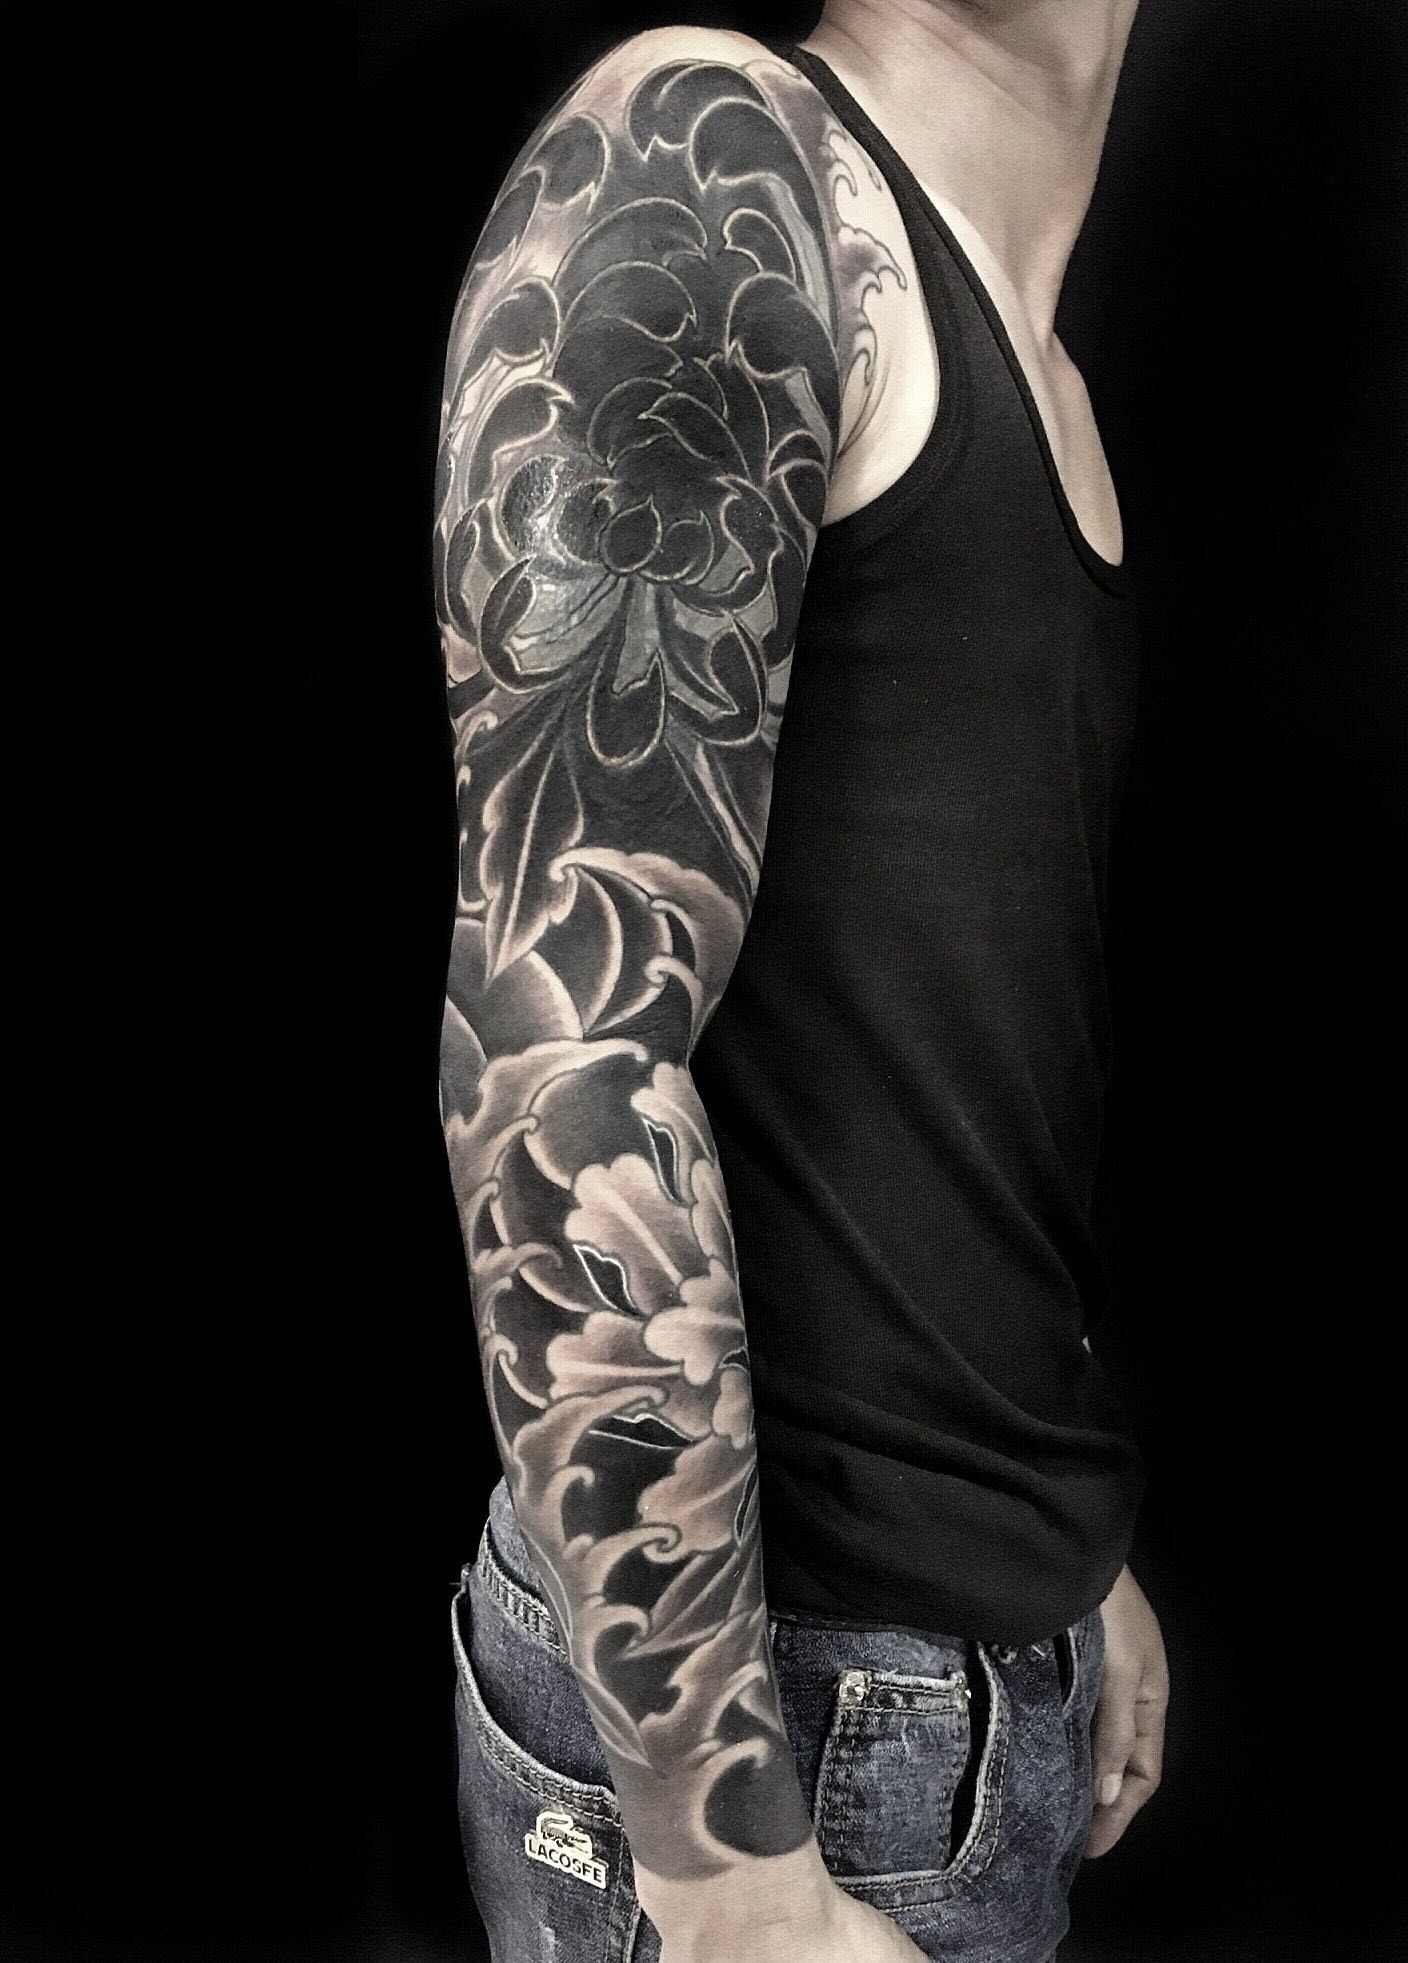 Tattoo Designs Hình Xăm Phượng Hoàng Đen Trắng  Stylist4men